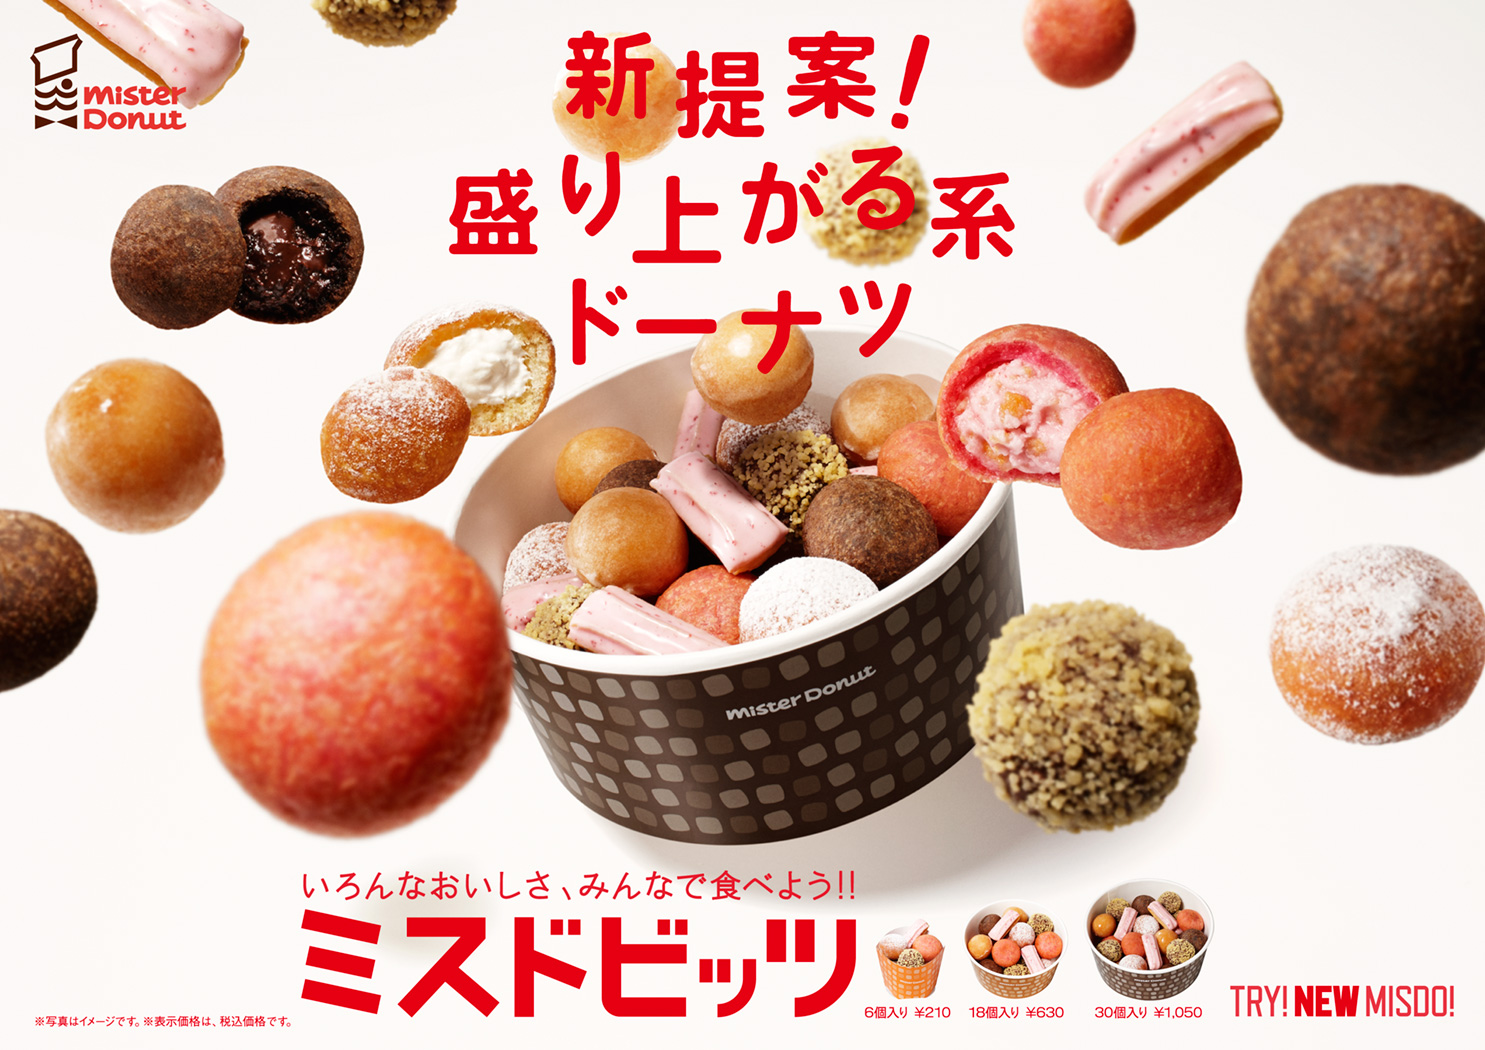 Mister Donut Poster 2013